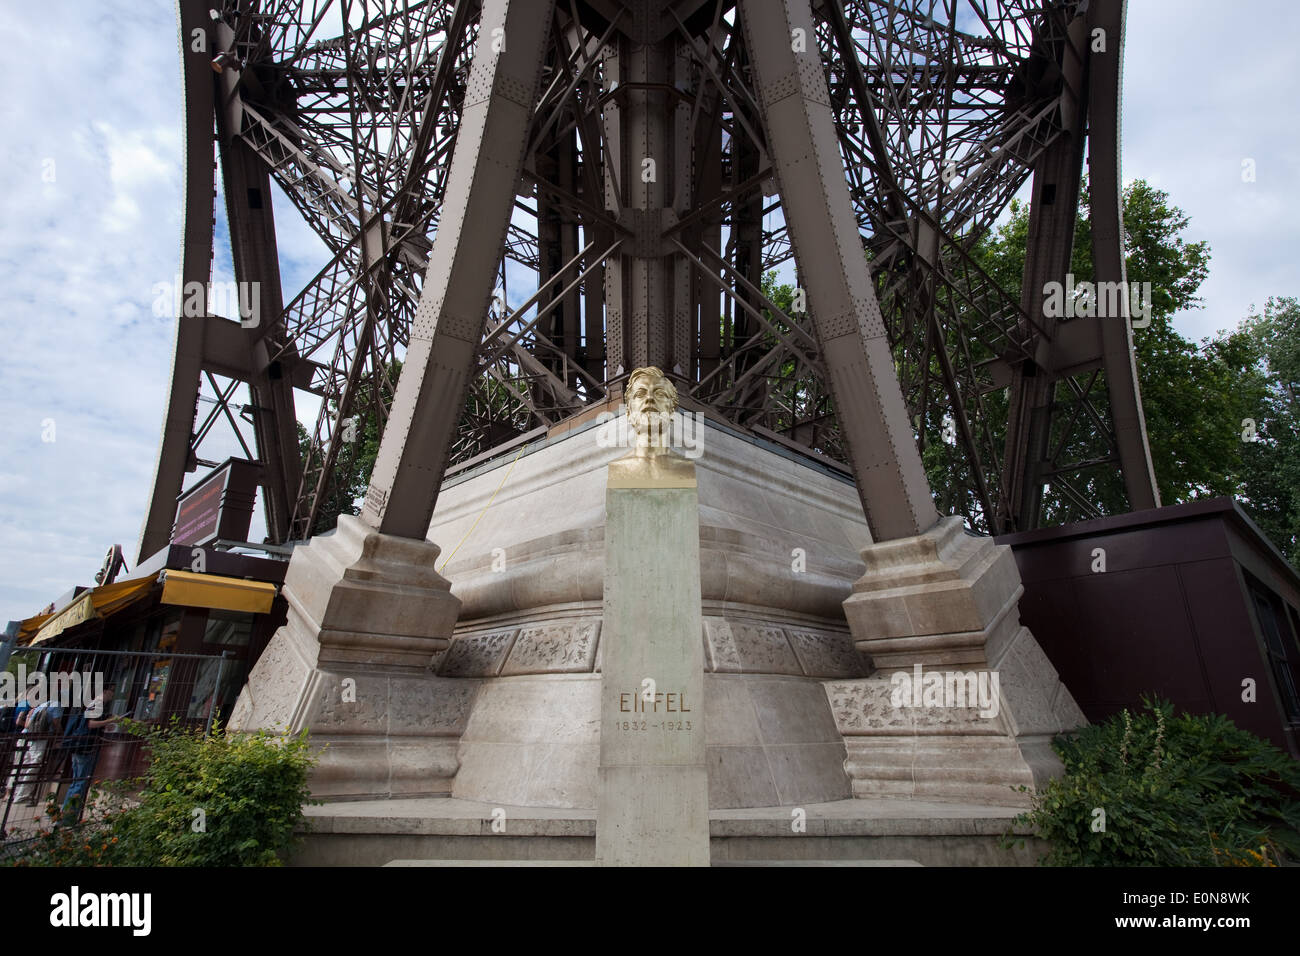 Denkmal Gustave Eiffel, Paris, Frankreich - Gustave Eiffel Monument, Paris, France Stock Photo